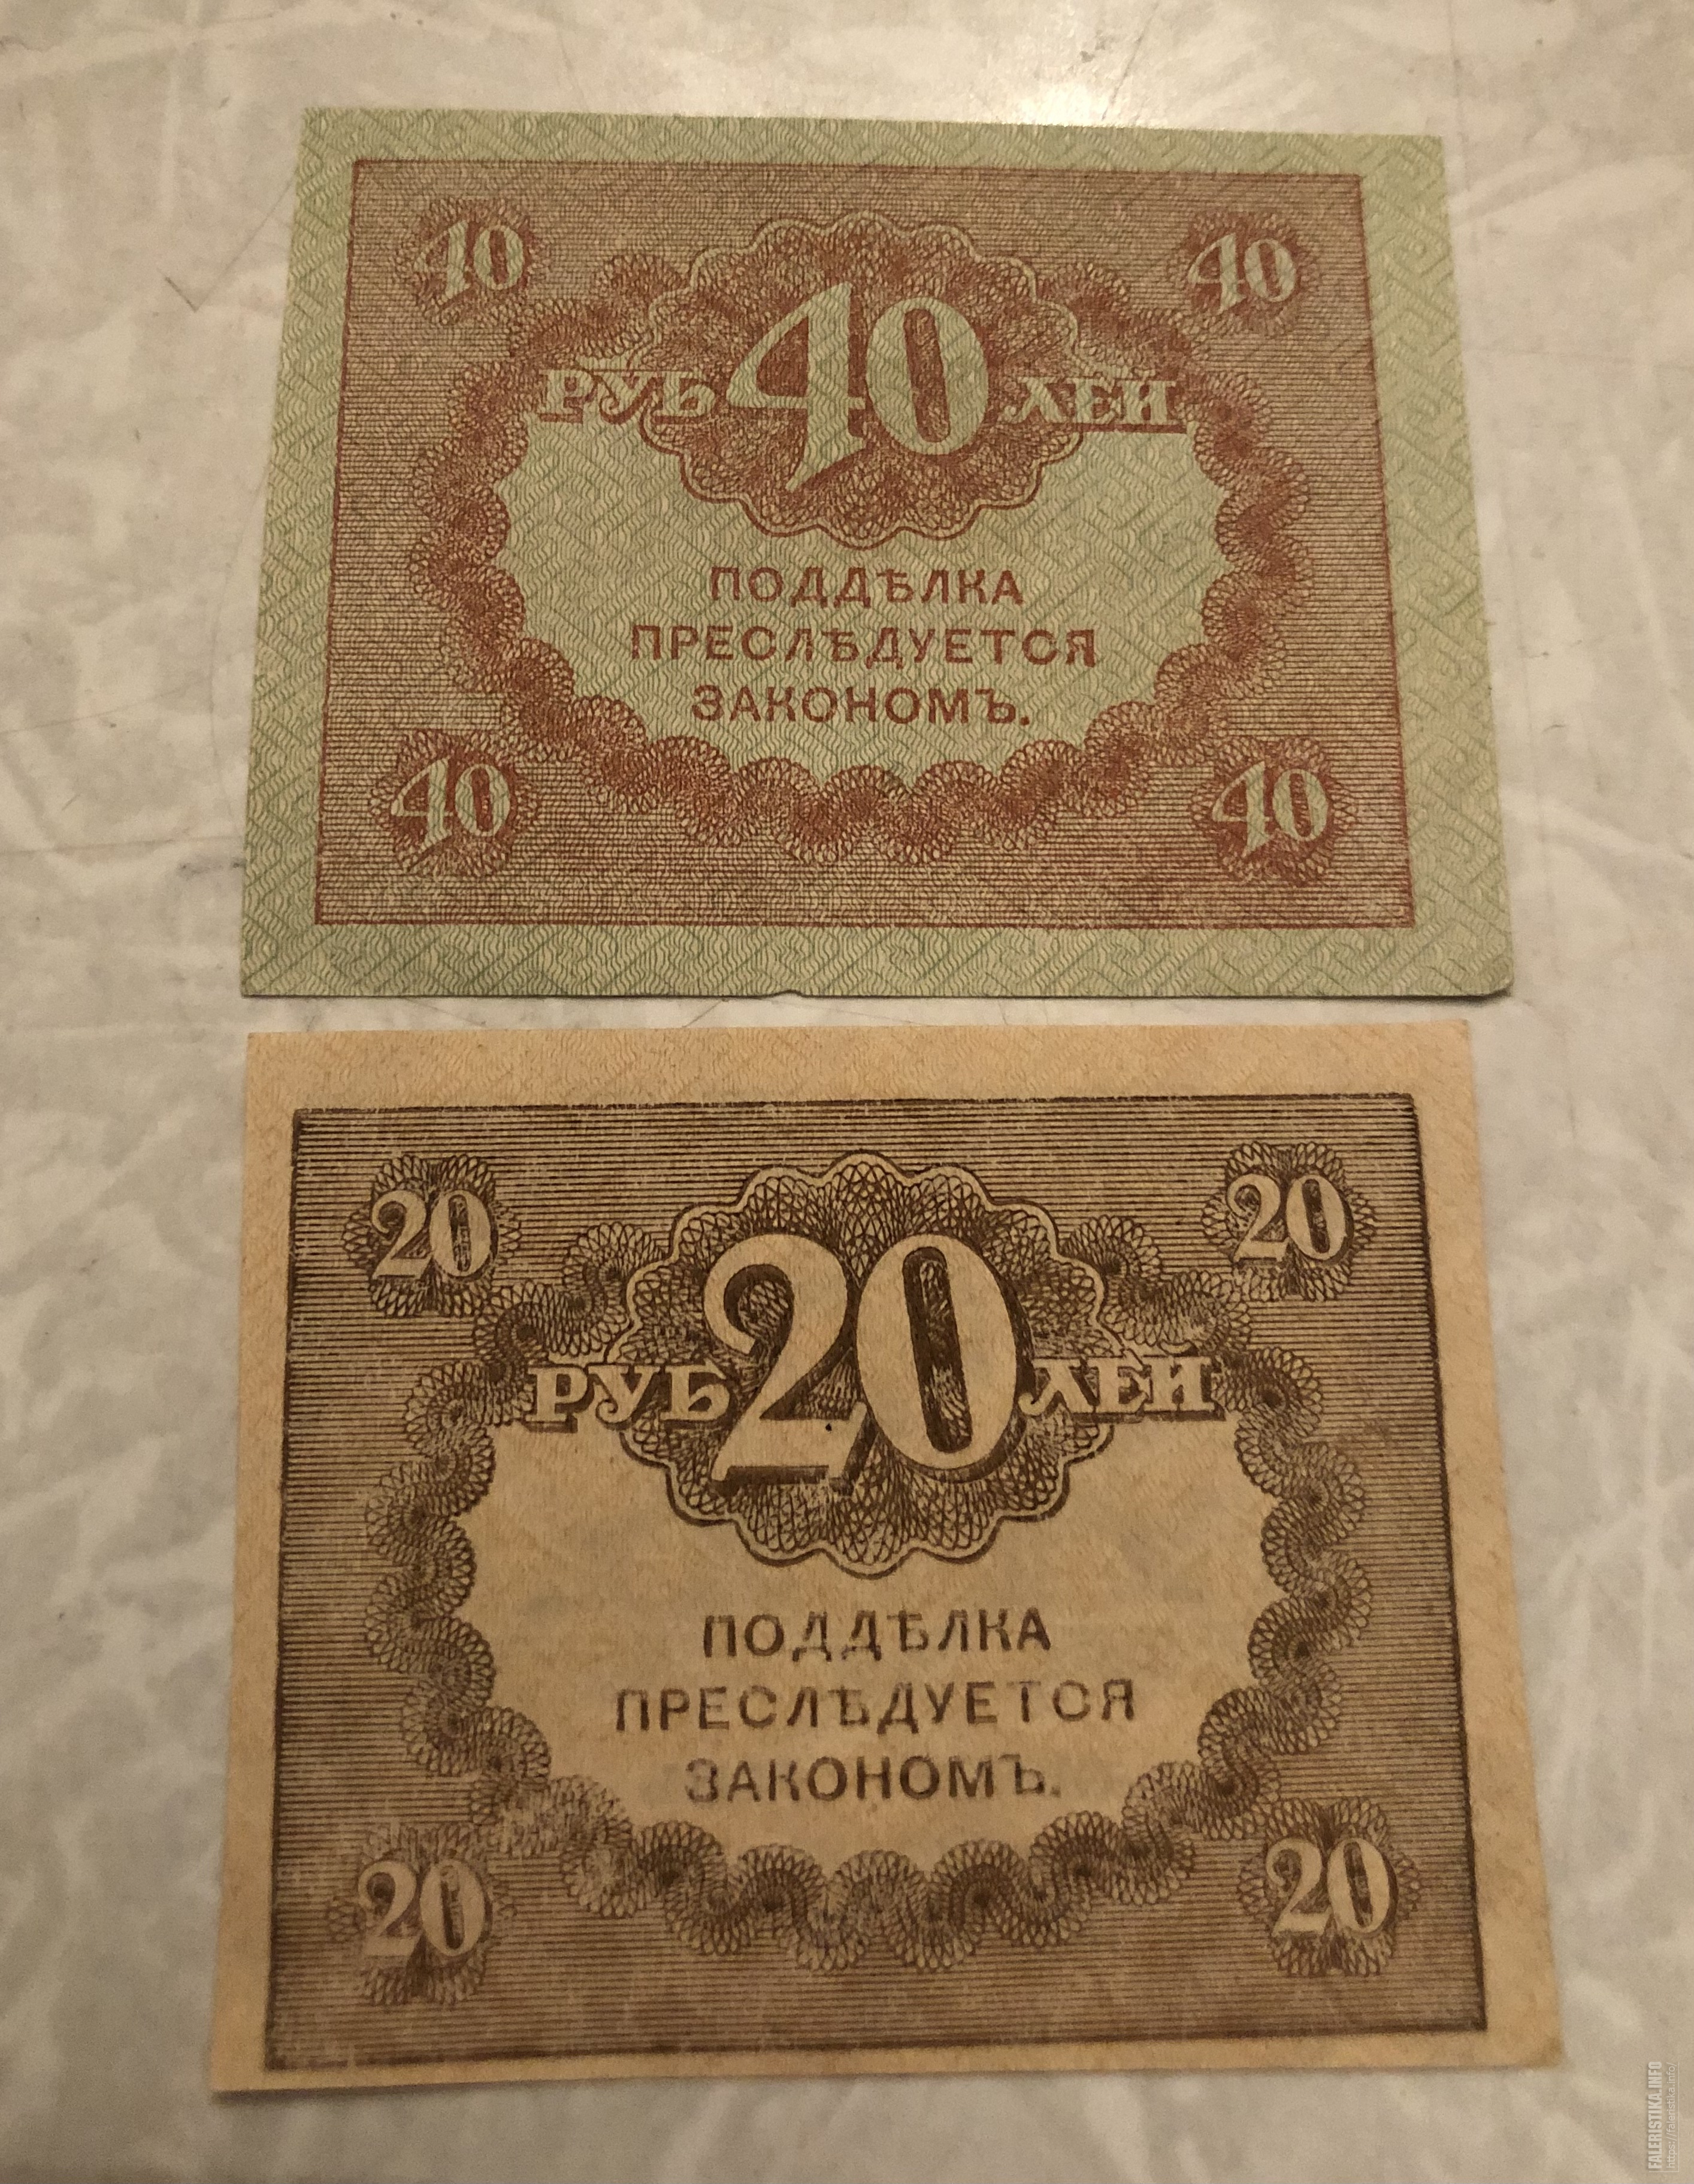 Керенка 40 рублей. Керенки 20 и 40 рублей. 500 Рублей керенки. Керенка 20 рублей.